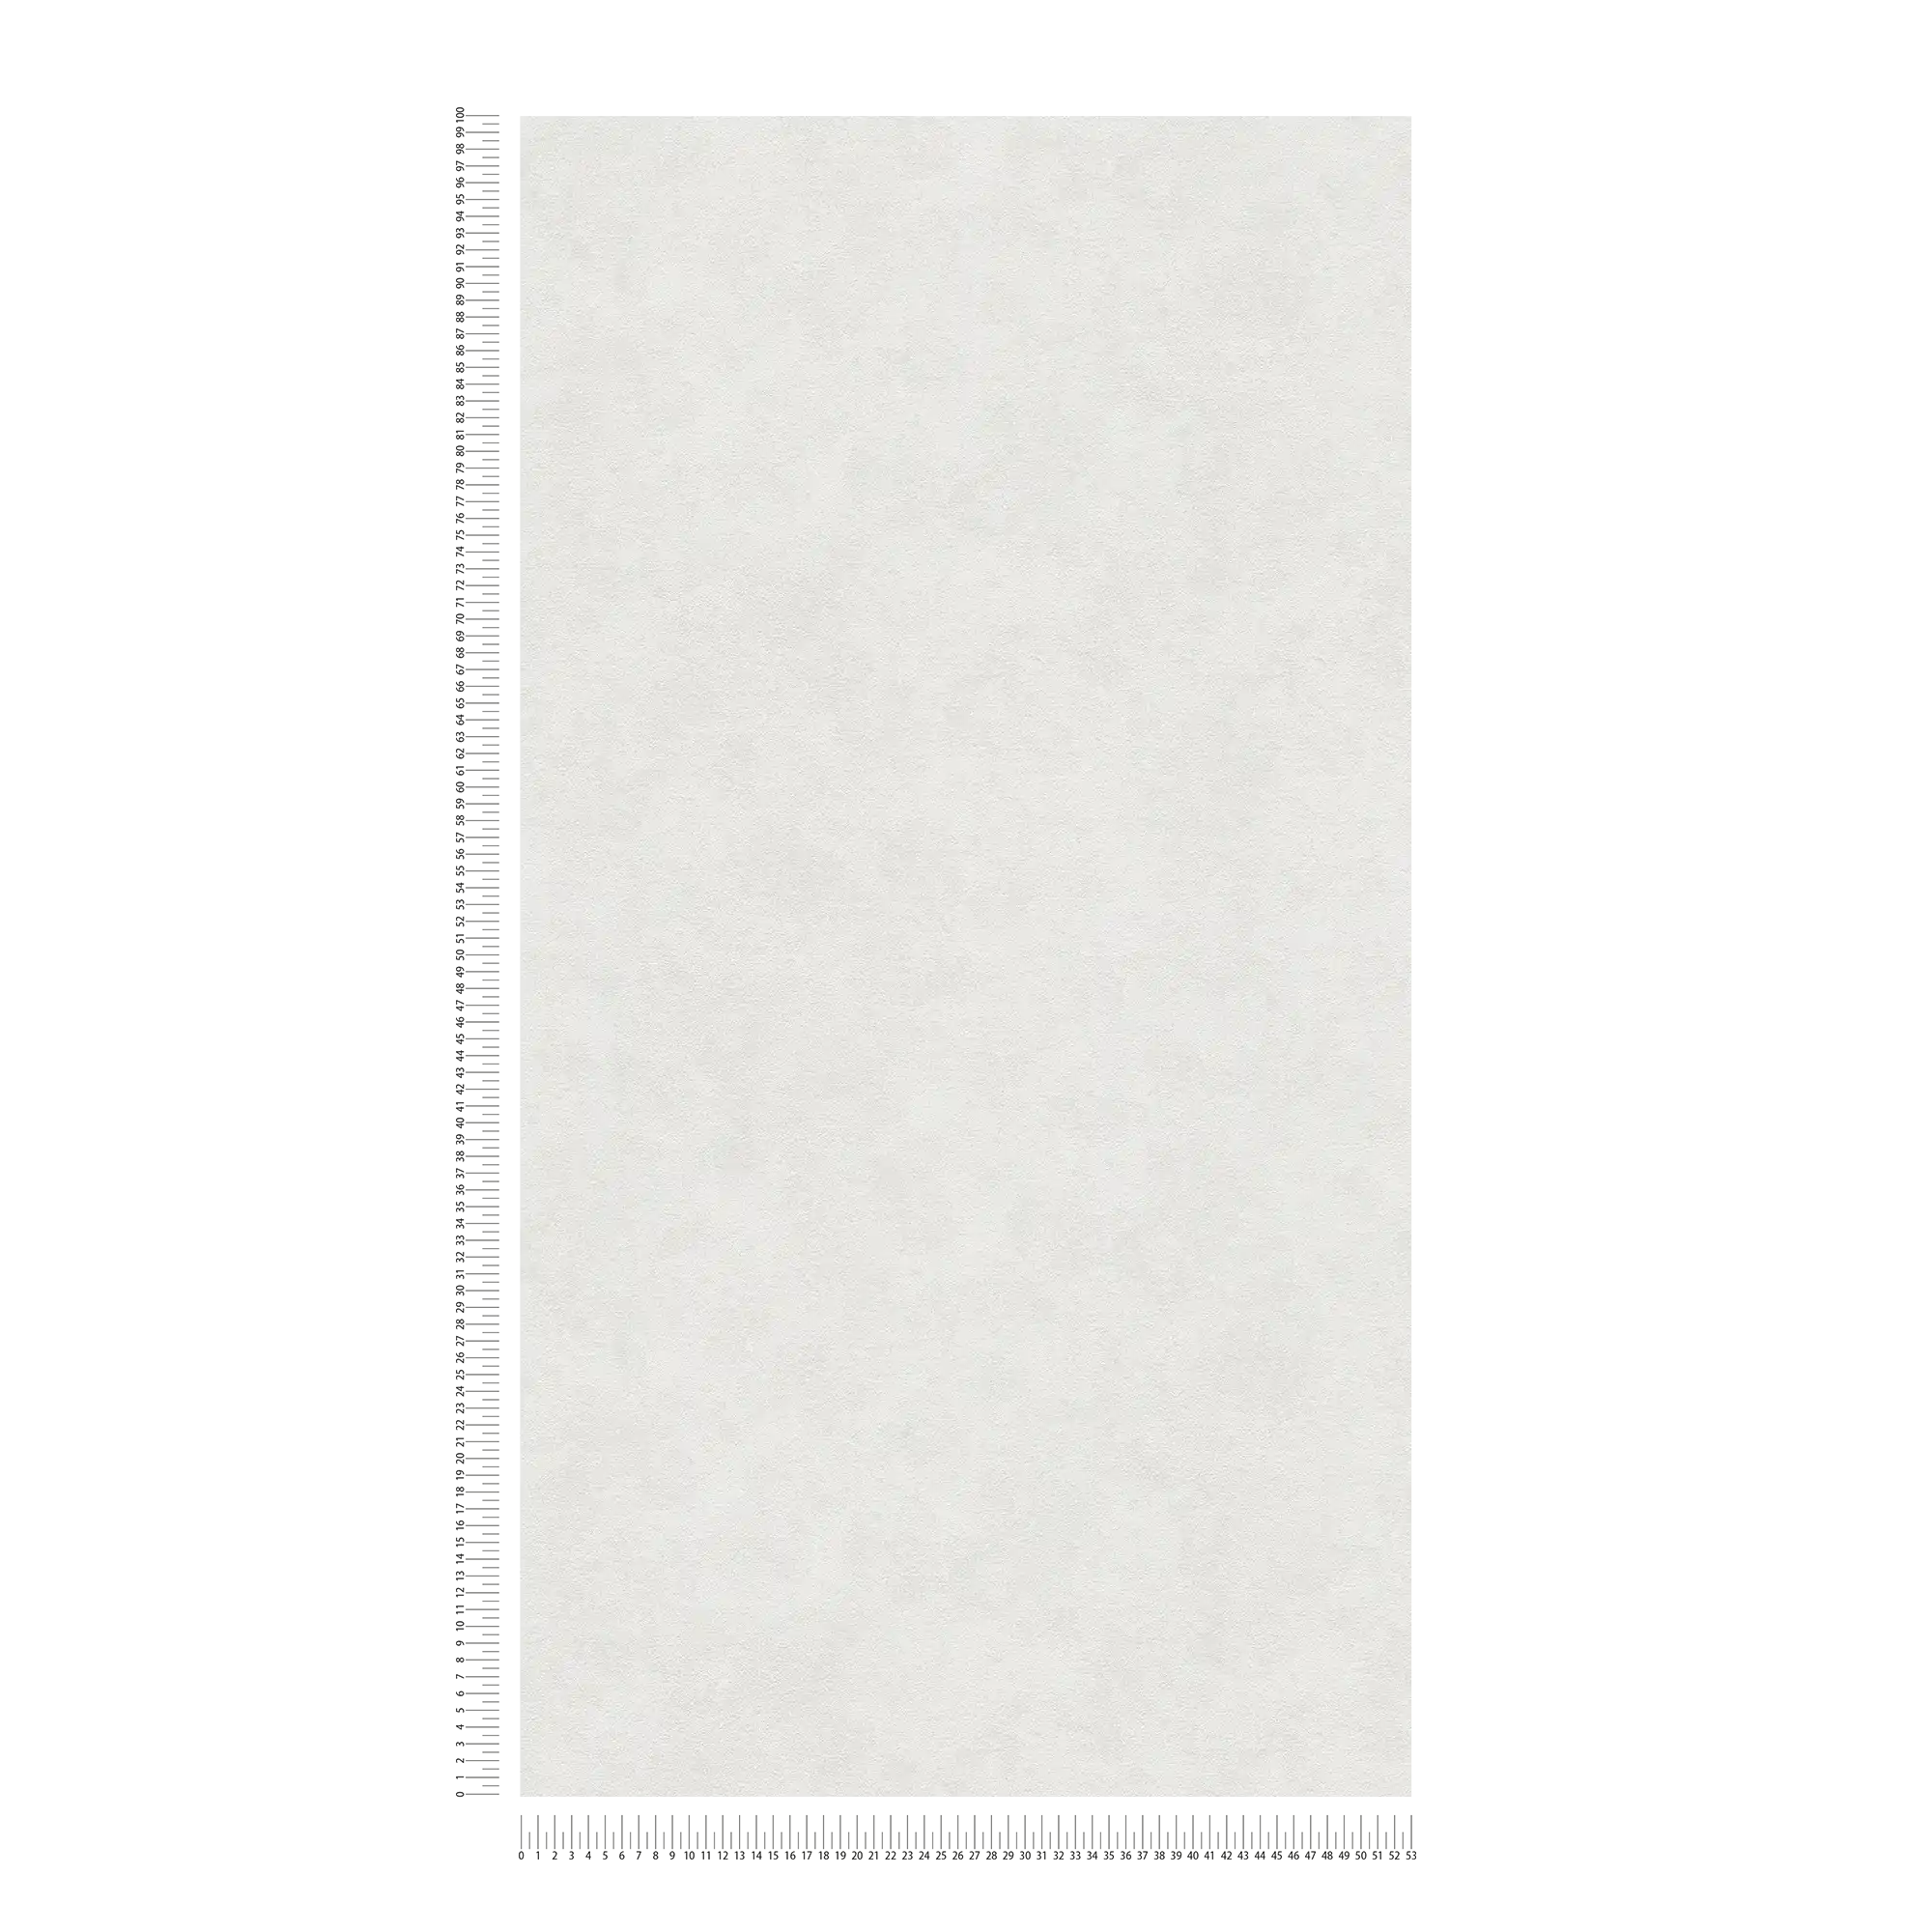             Papier peint uni gris clair ombré avec gaufrage structuré
        